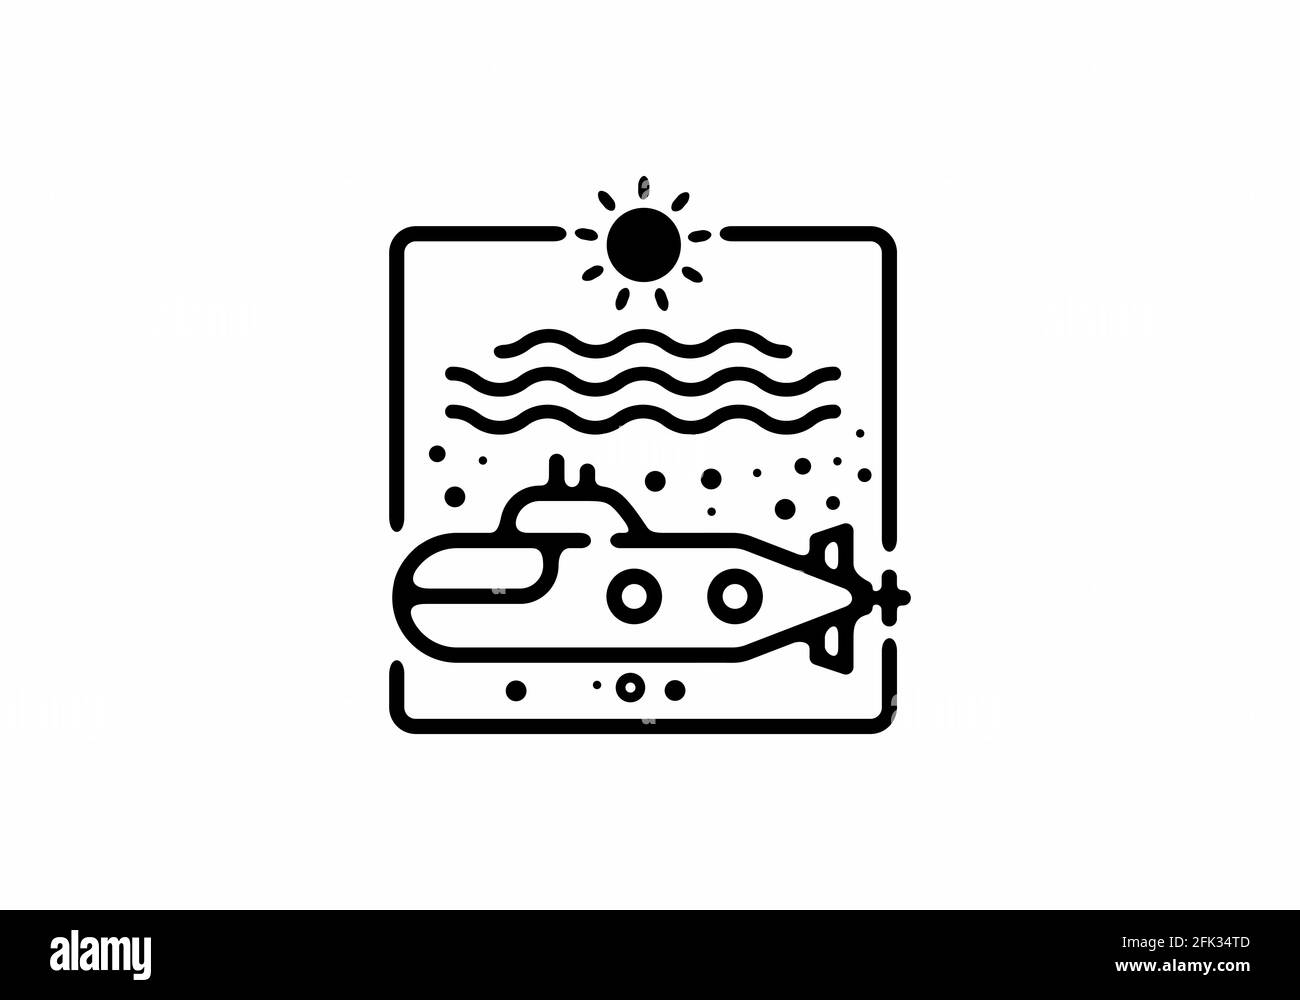 Schwarze Linie Kunst Illustration von U-Boot in quadratischer Form Design Stock Vektor